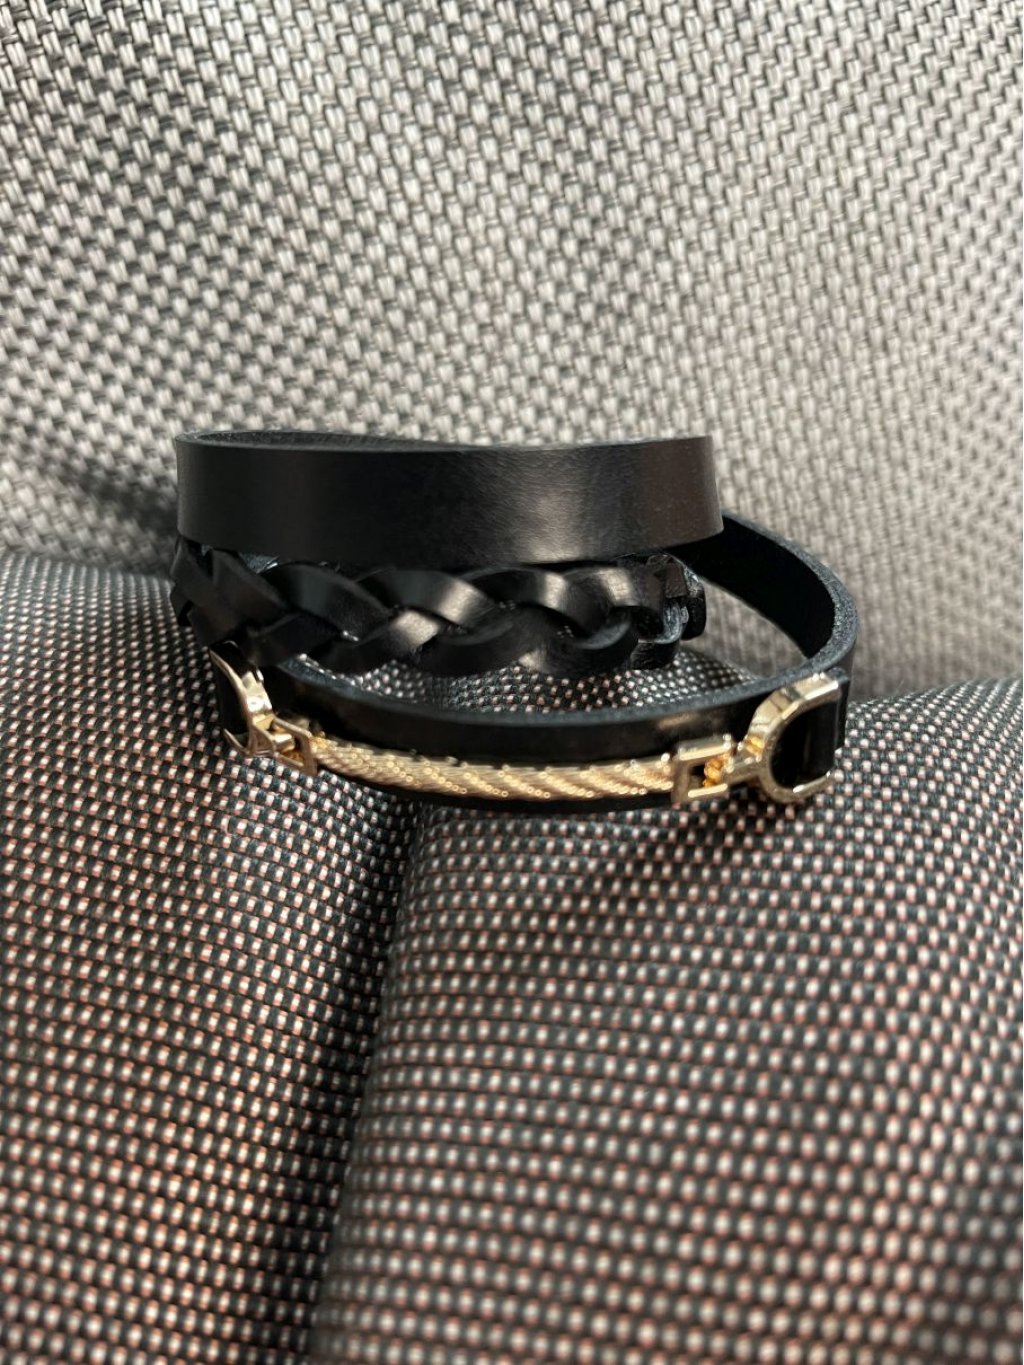 Náramek černý kožený se zlatými detaily splétaný